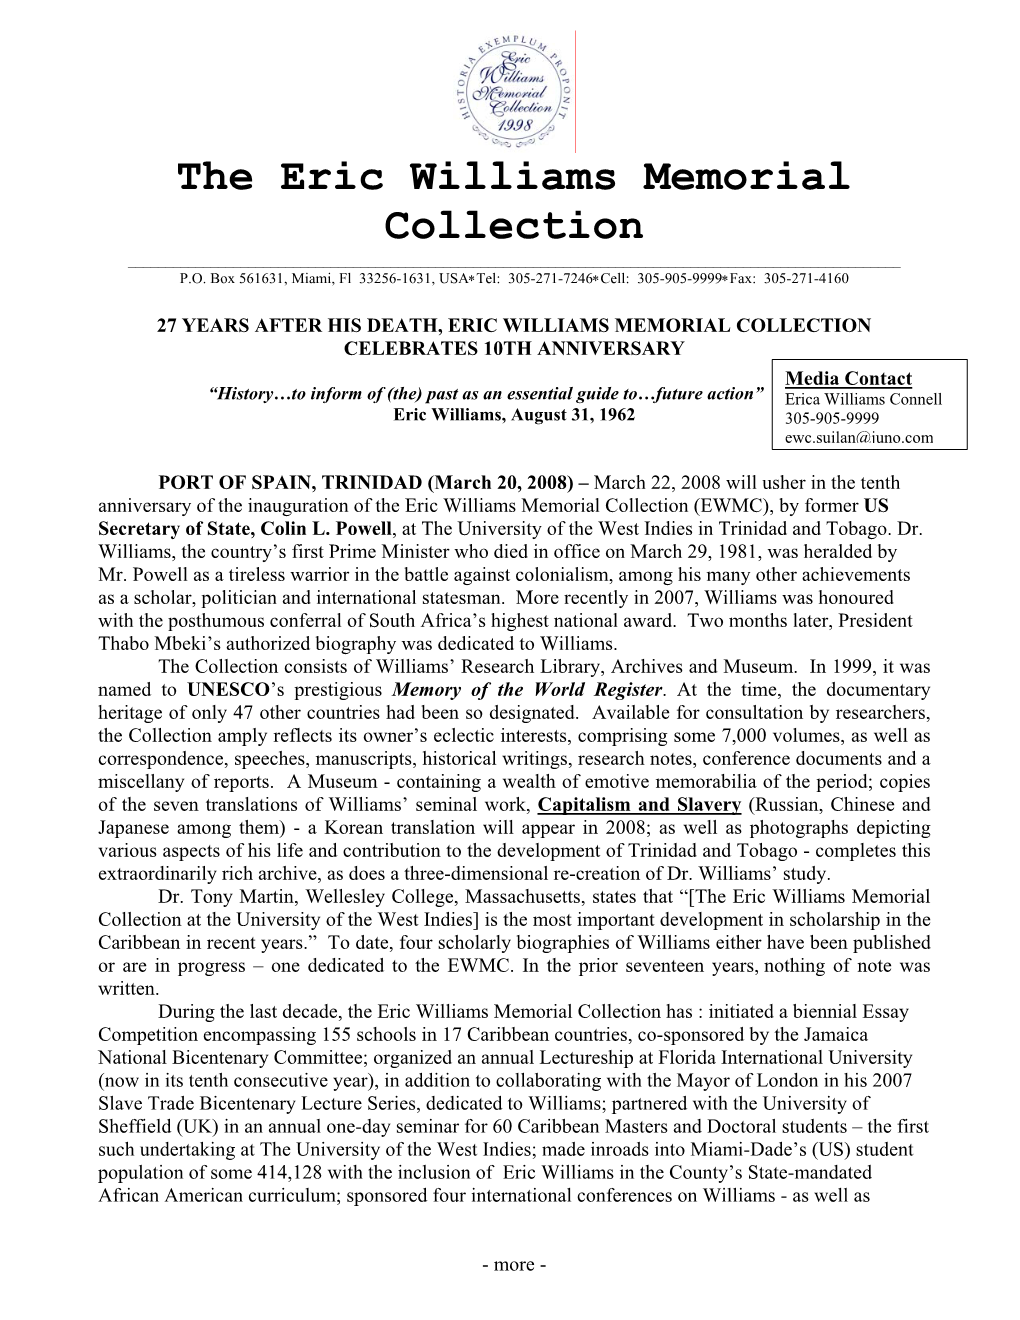 The Eric Williams Memorial Collection ______P.O